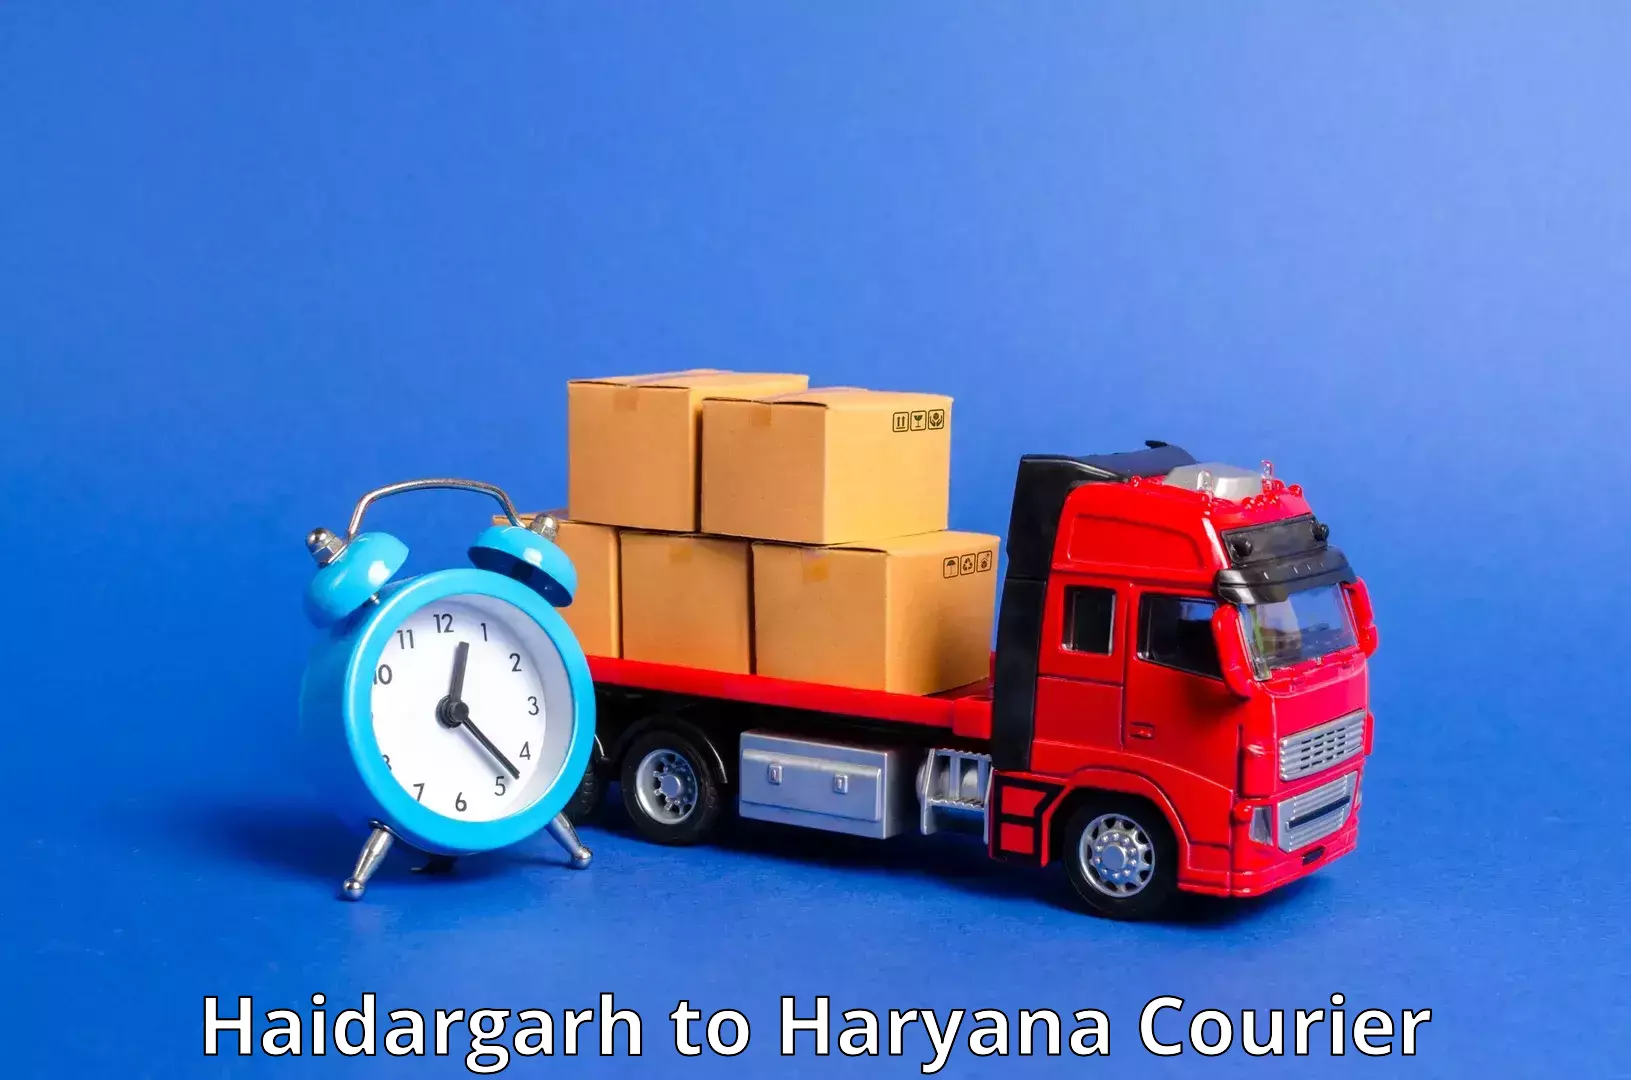 Courier service partnerships Haidargarh to Kurukshetra